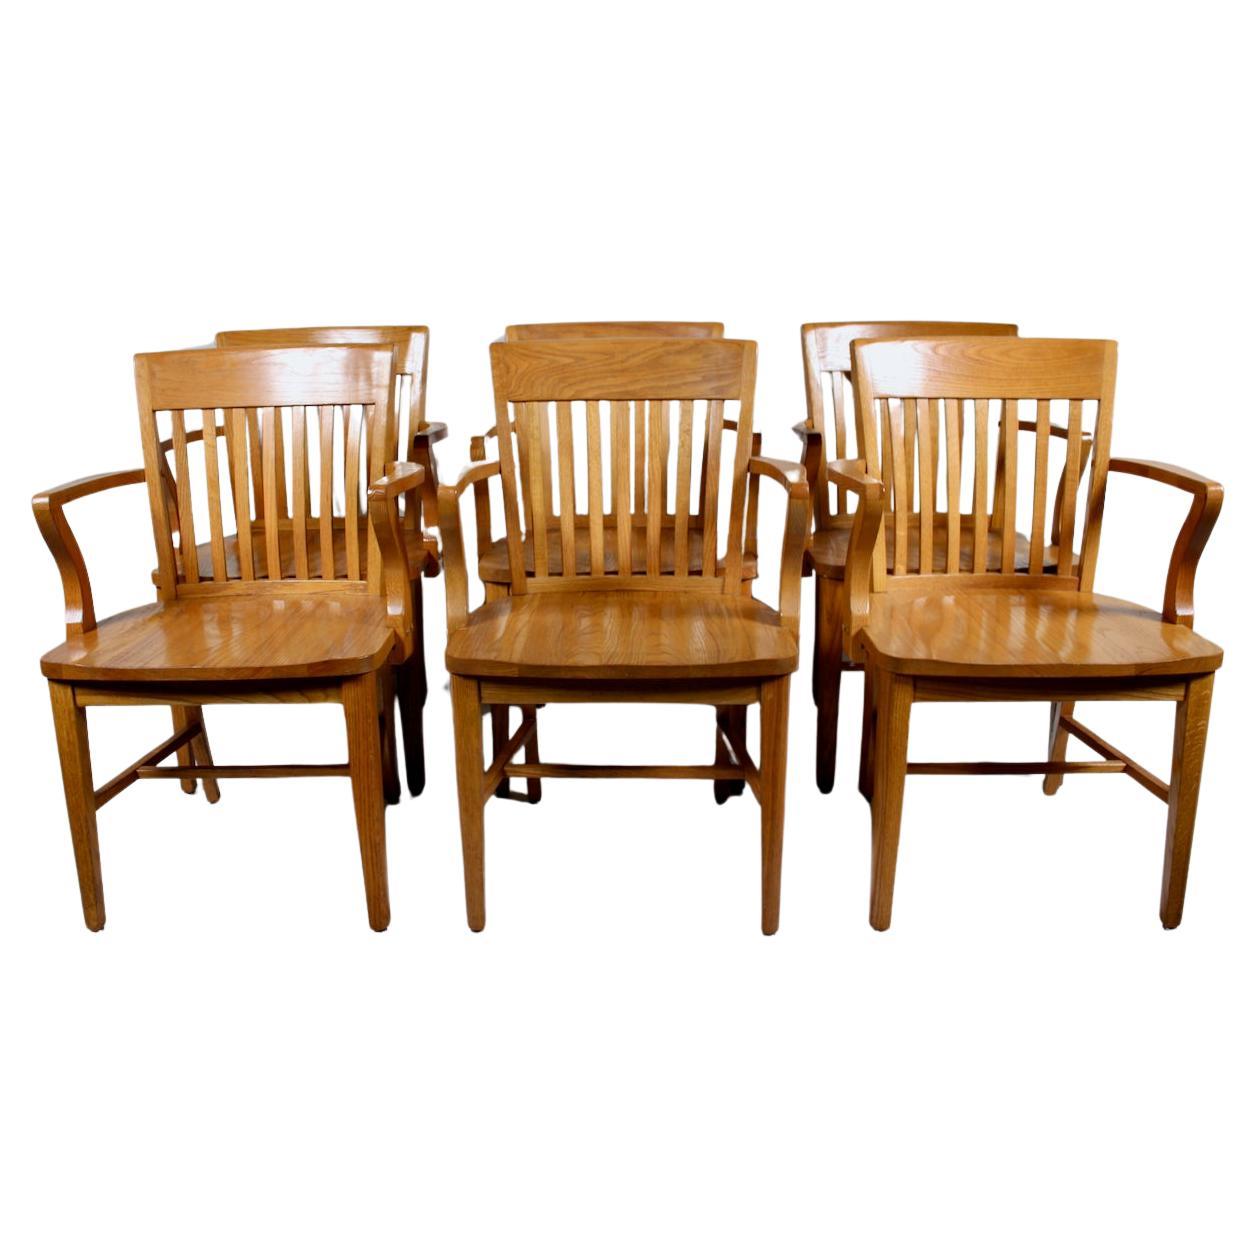 Ensemble de six fauteuils de banquier en chêne doré massif, vers 1950